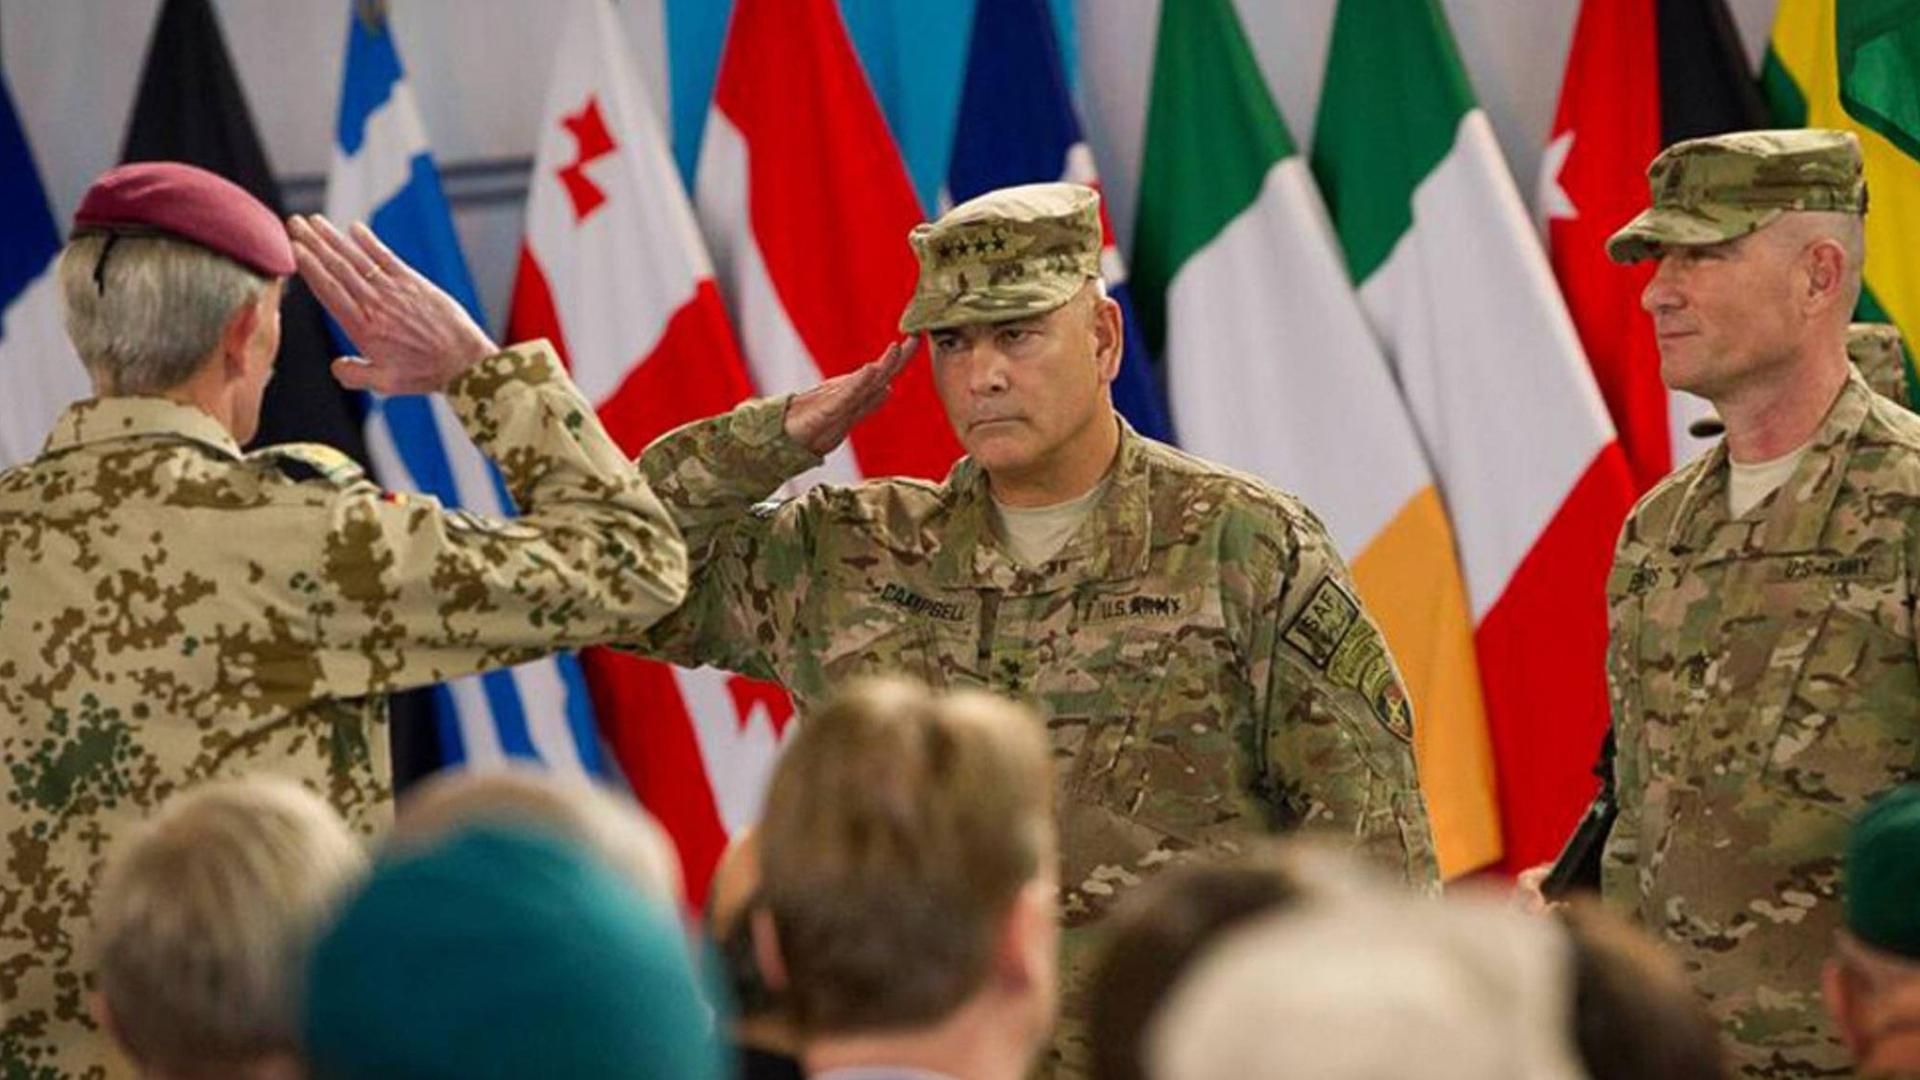 Der US-Kommandant der Nato-geführten Internationalen Afghanistan-Schutztruppe ISAF, General John F. Campbell (m.), salutiert während einer Zeremonie in der Hauptstadt Kabul, die das Ende des Kampfeinsatzes der ISAF markiert.